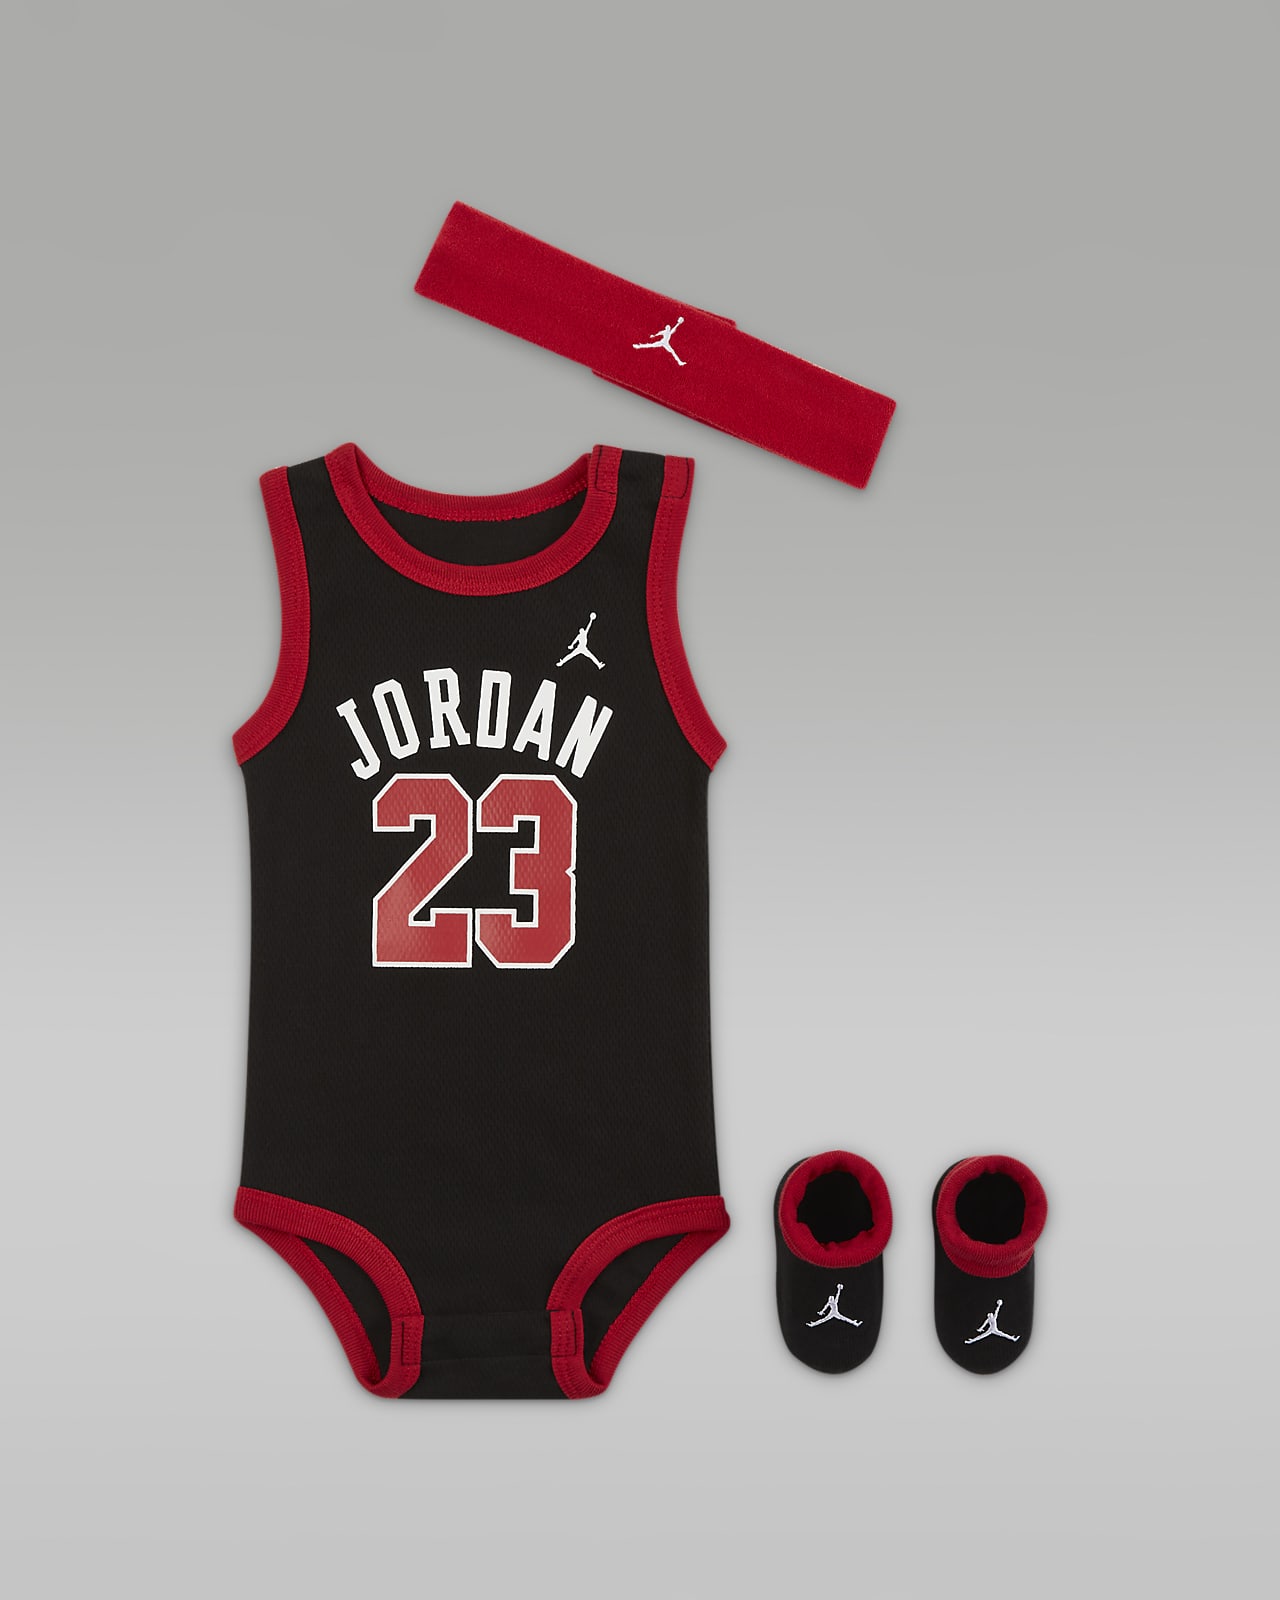 Jordan 婴童连体衣、头带和学步袜套装